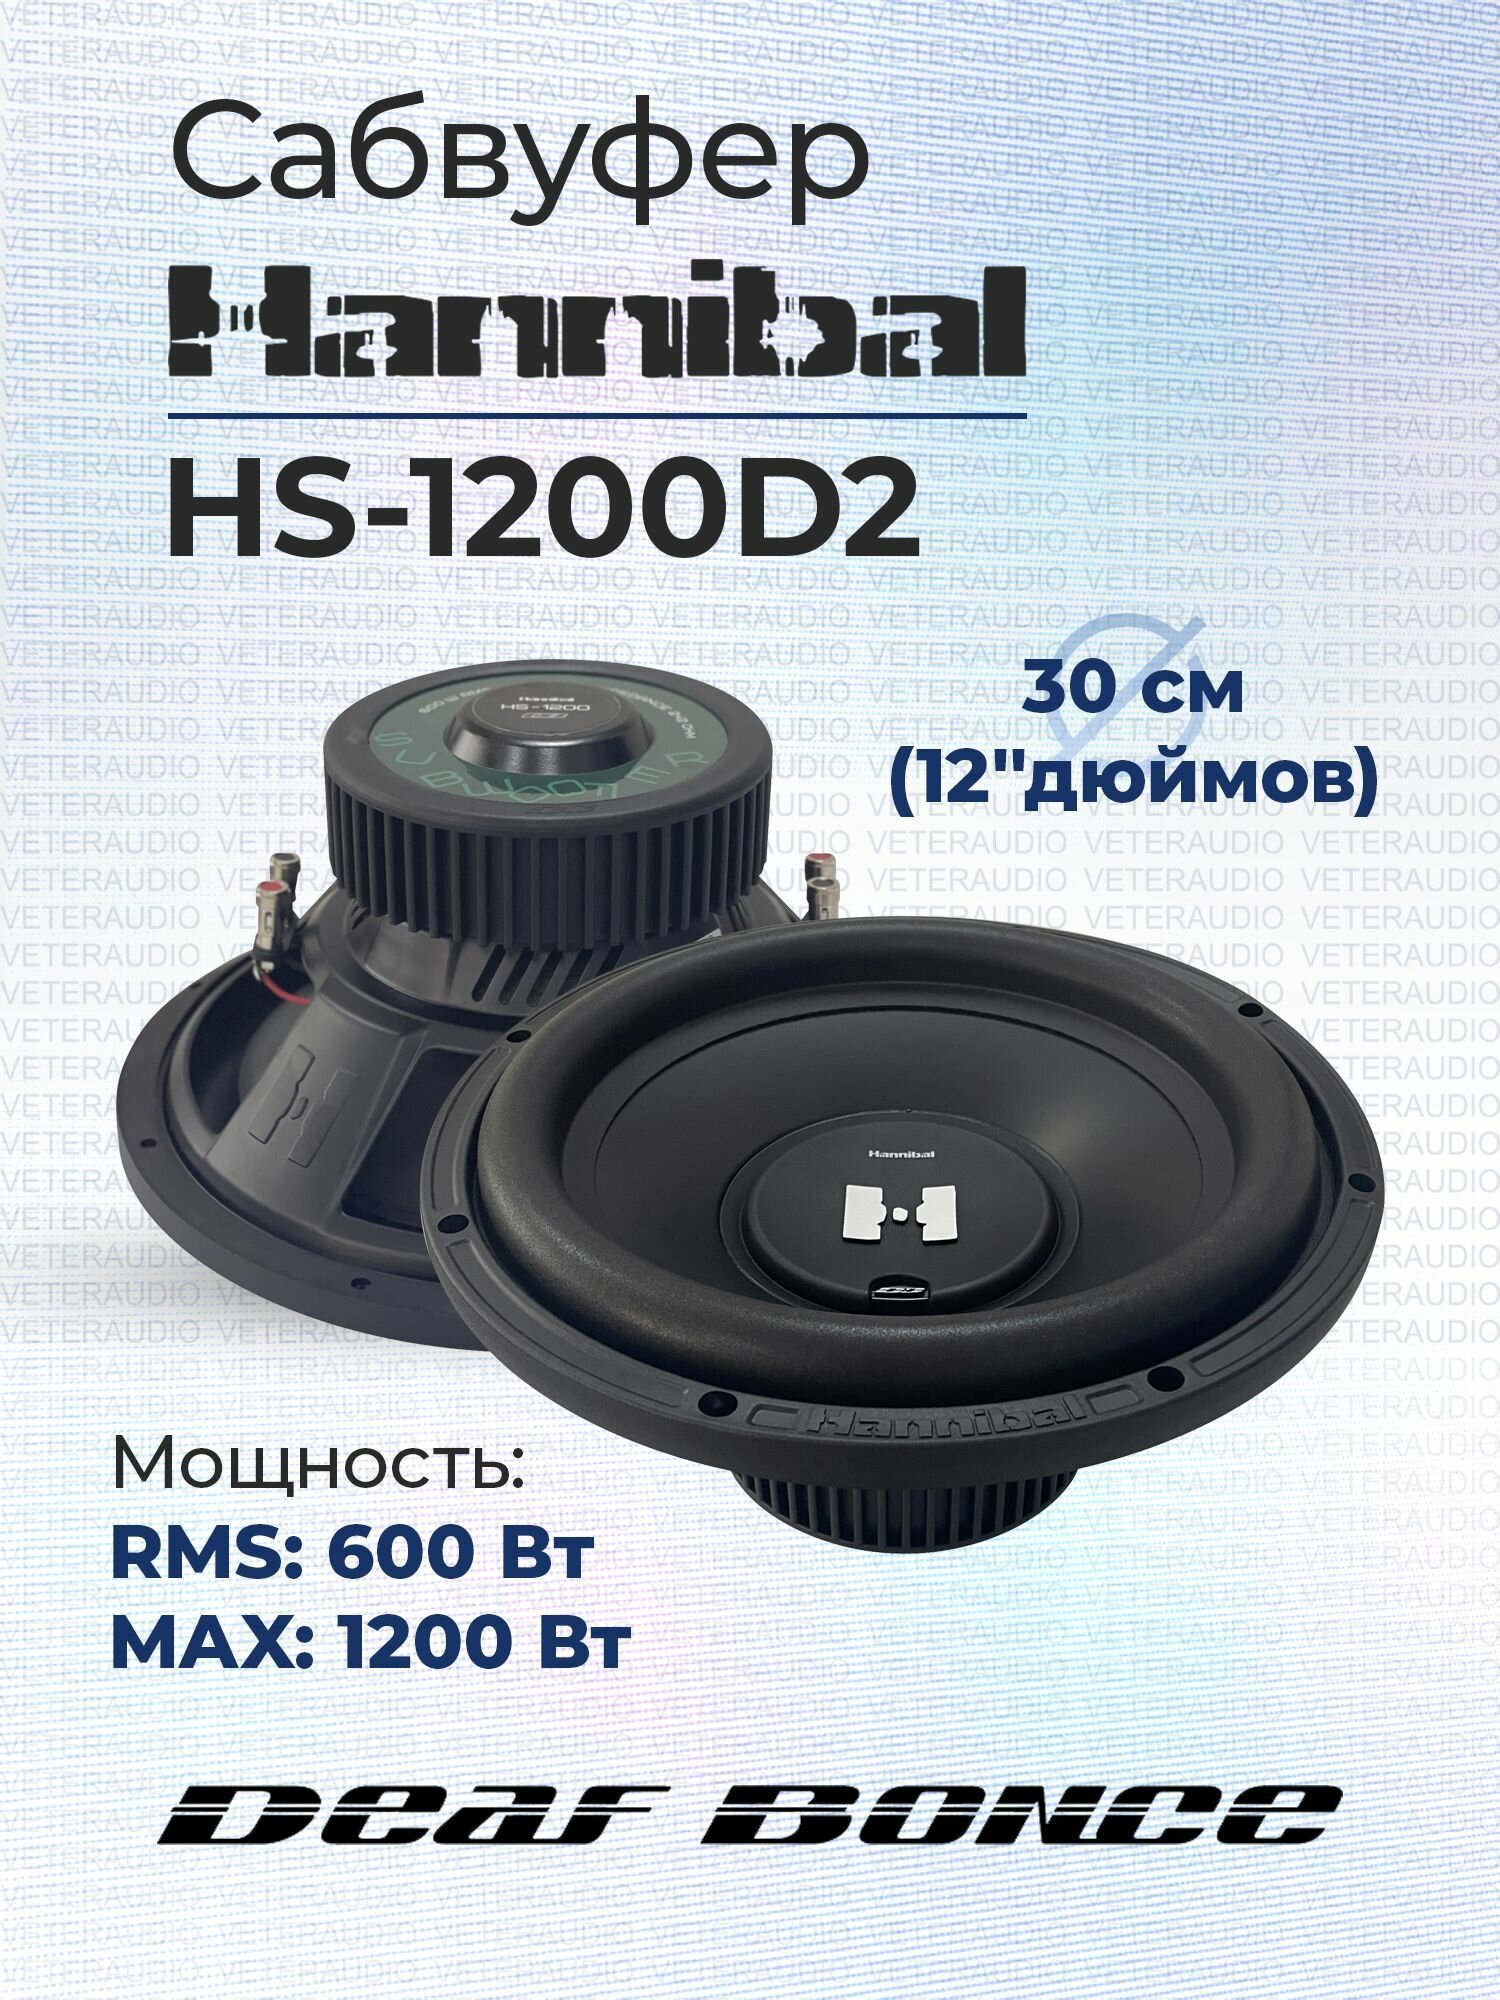 Сабвуфер Hannibal HS-1200 D2